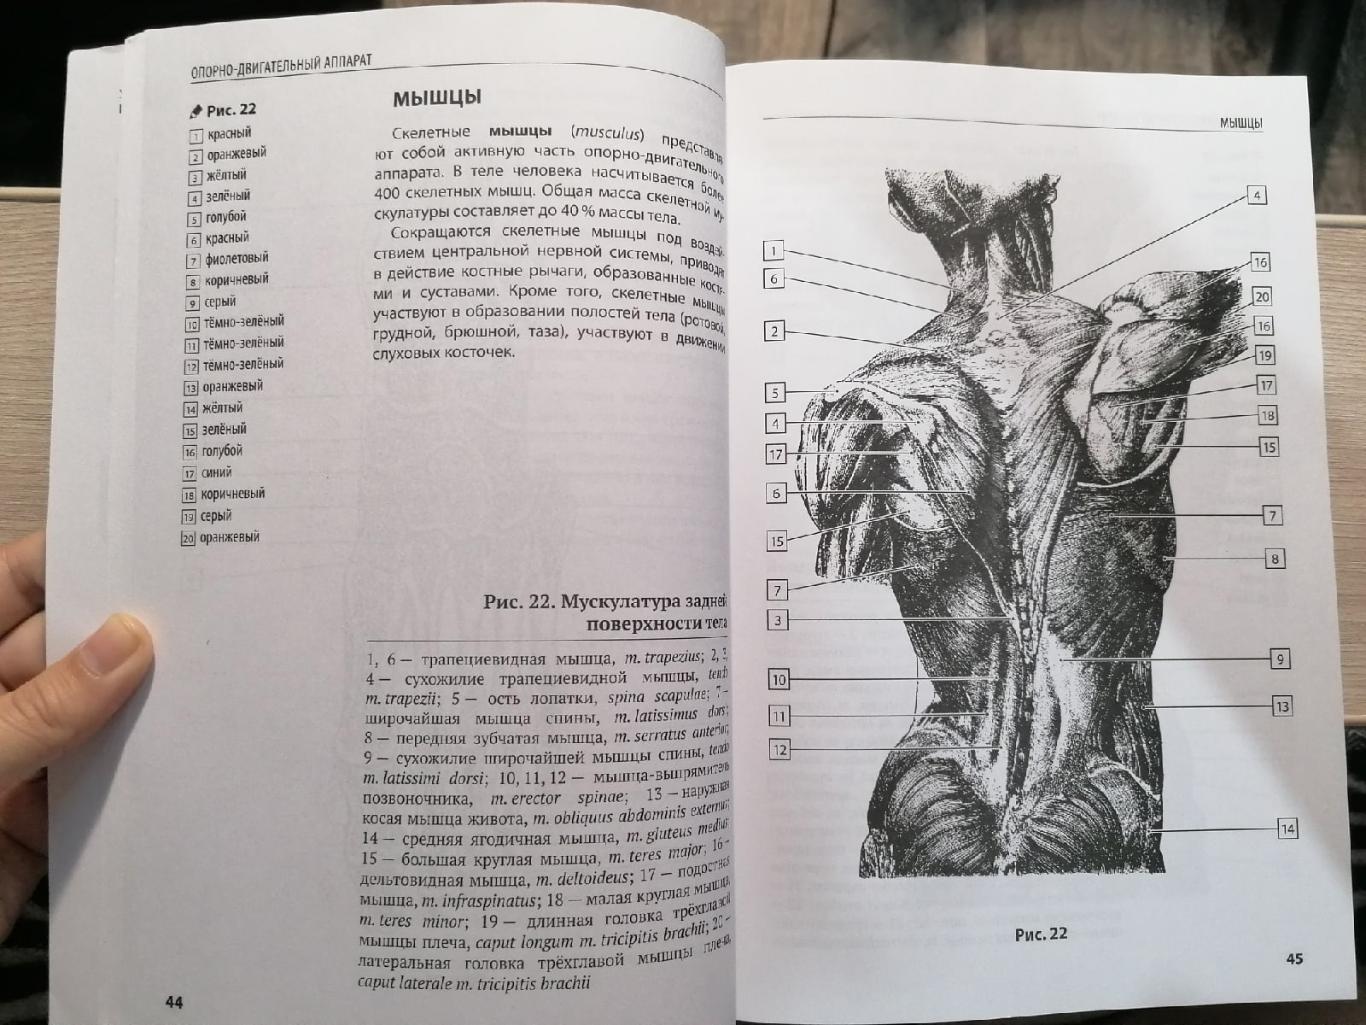 Компактный атлас-раскраска по дисциплине: Анатомия человека Ю.В. Боянович 2